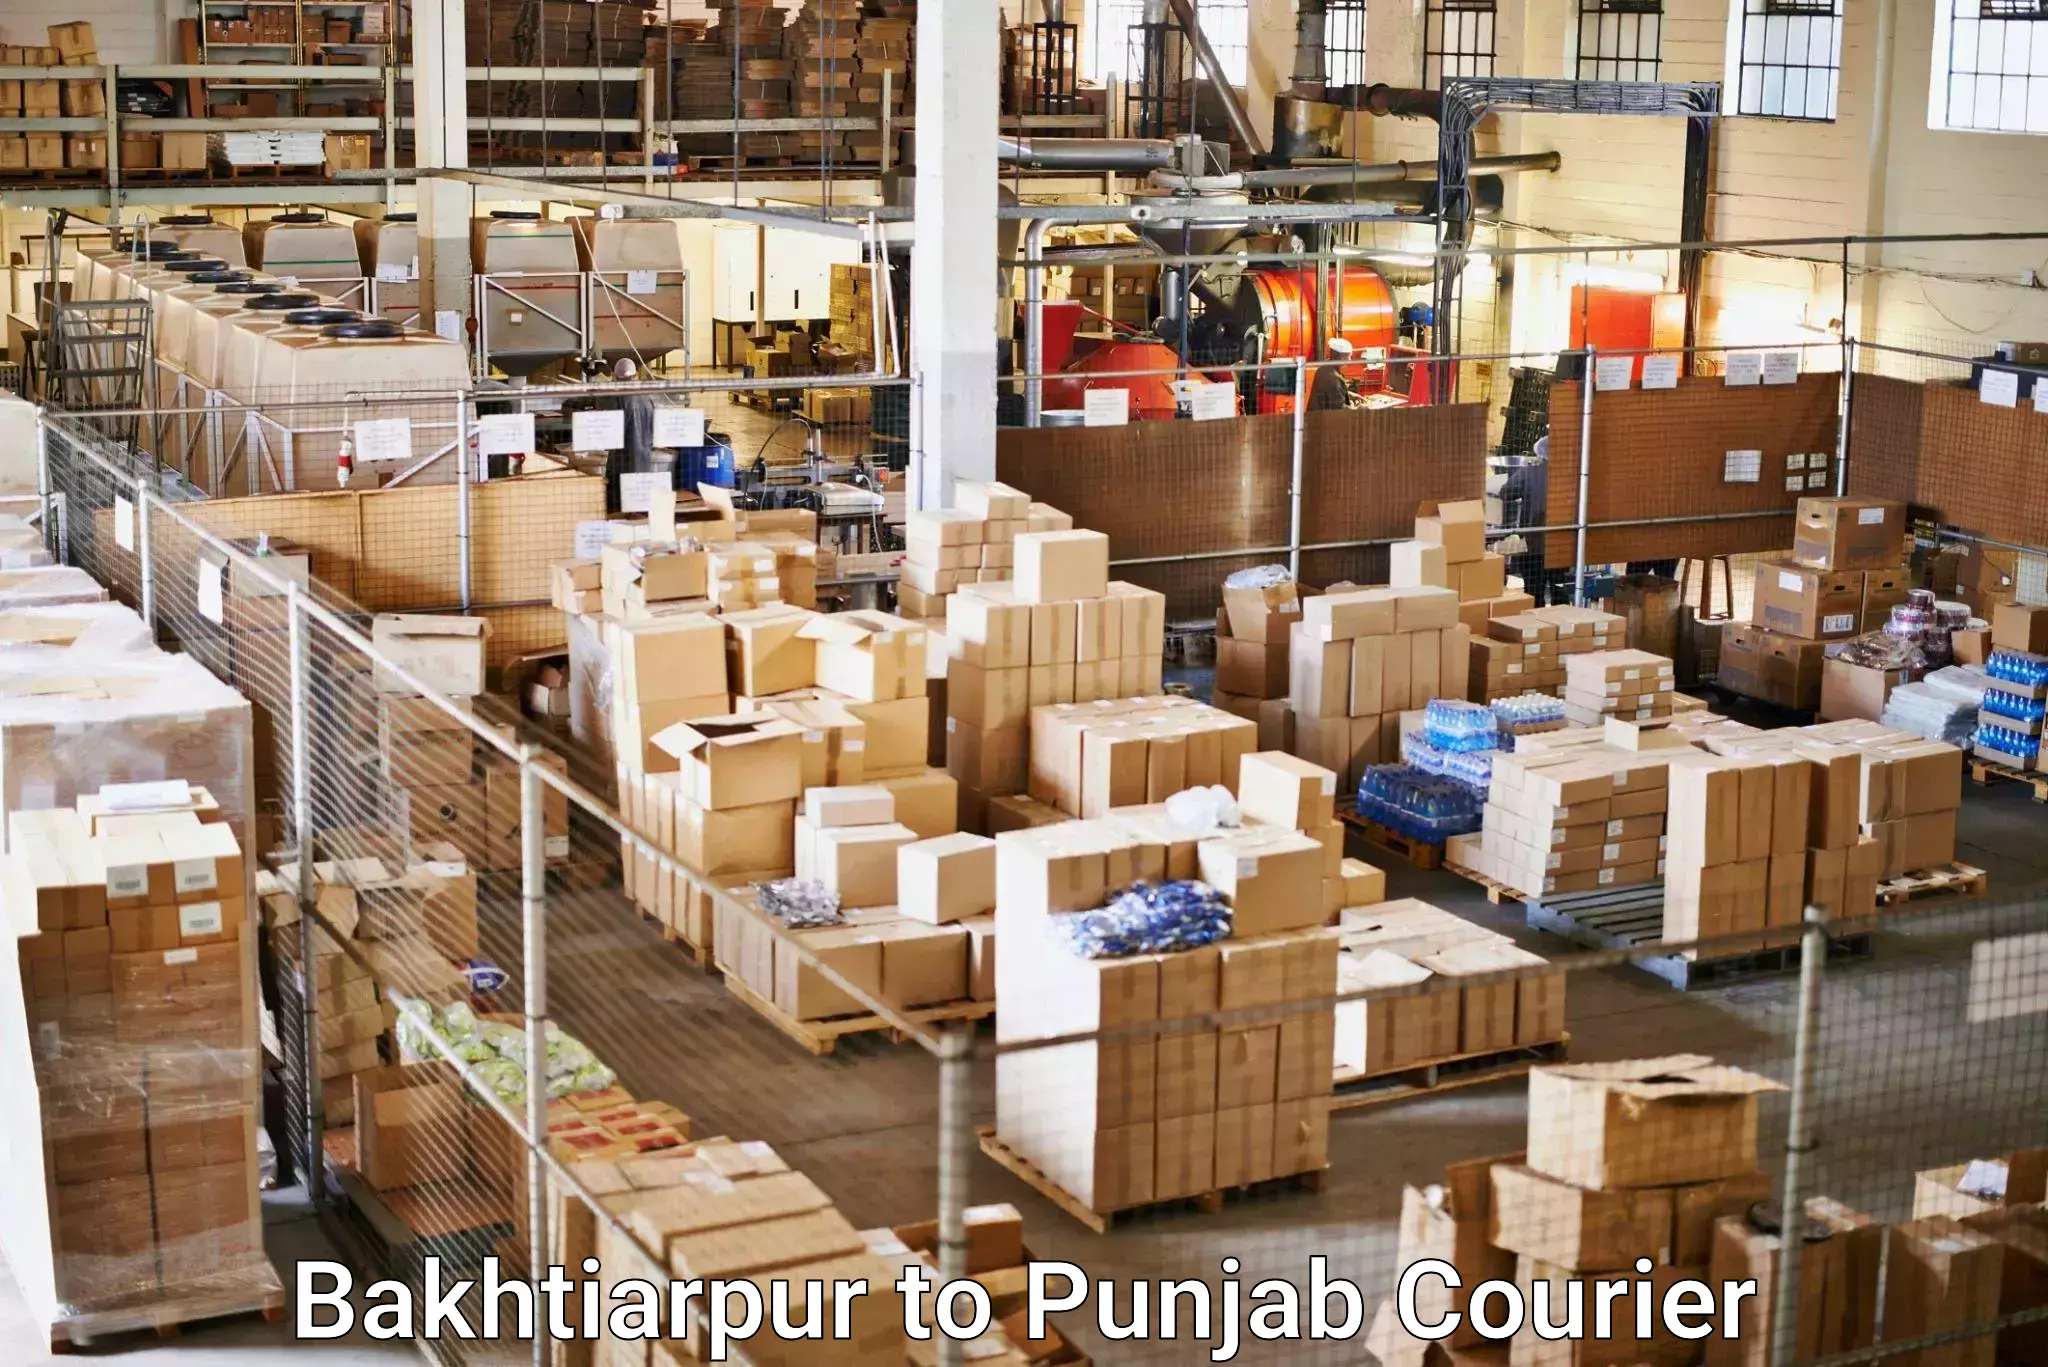 Courier service efficiency Bakhtiarpur to Punjab